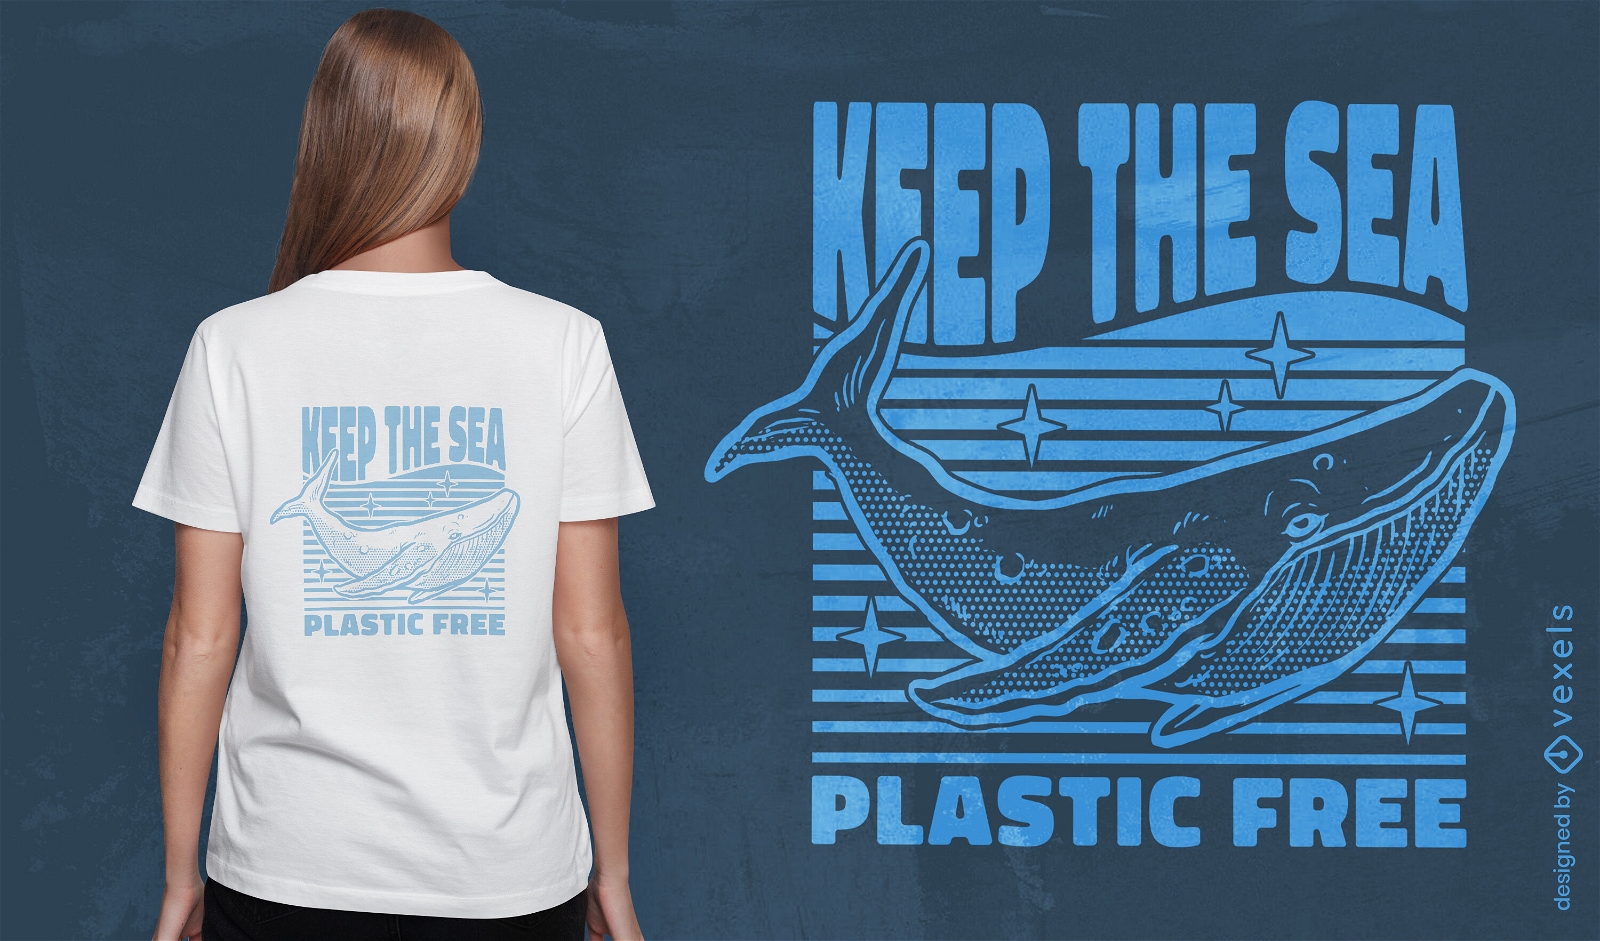 Mantenga el dise?o de camiseta de ballena libre de pl?stico del mar.